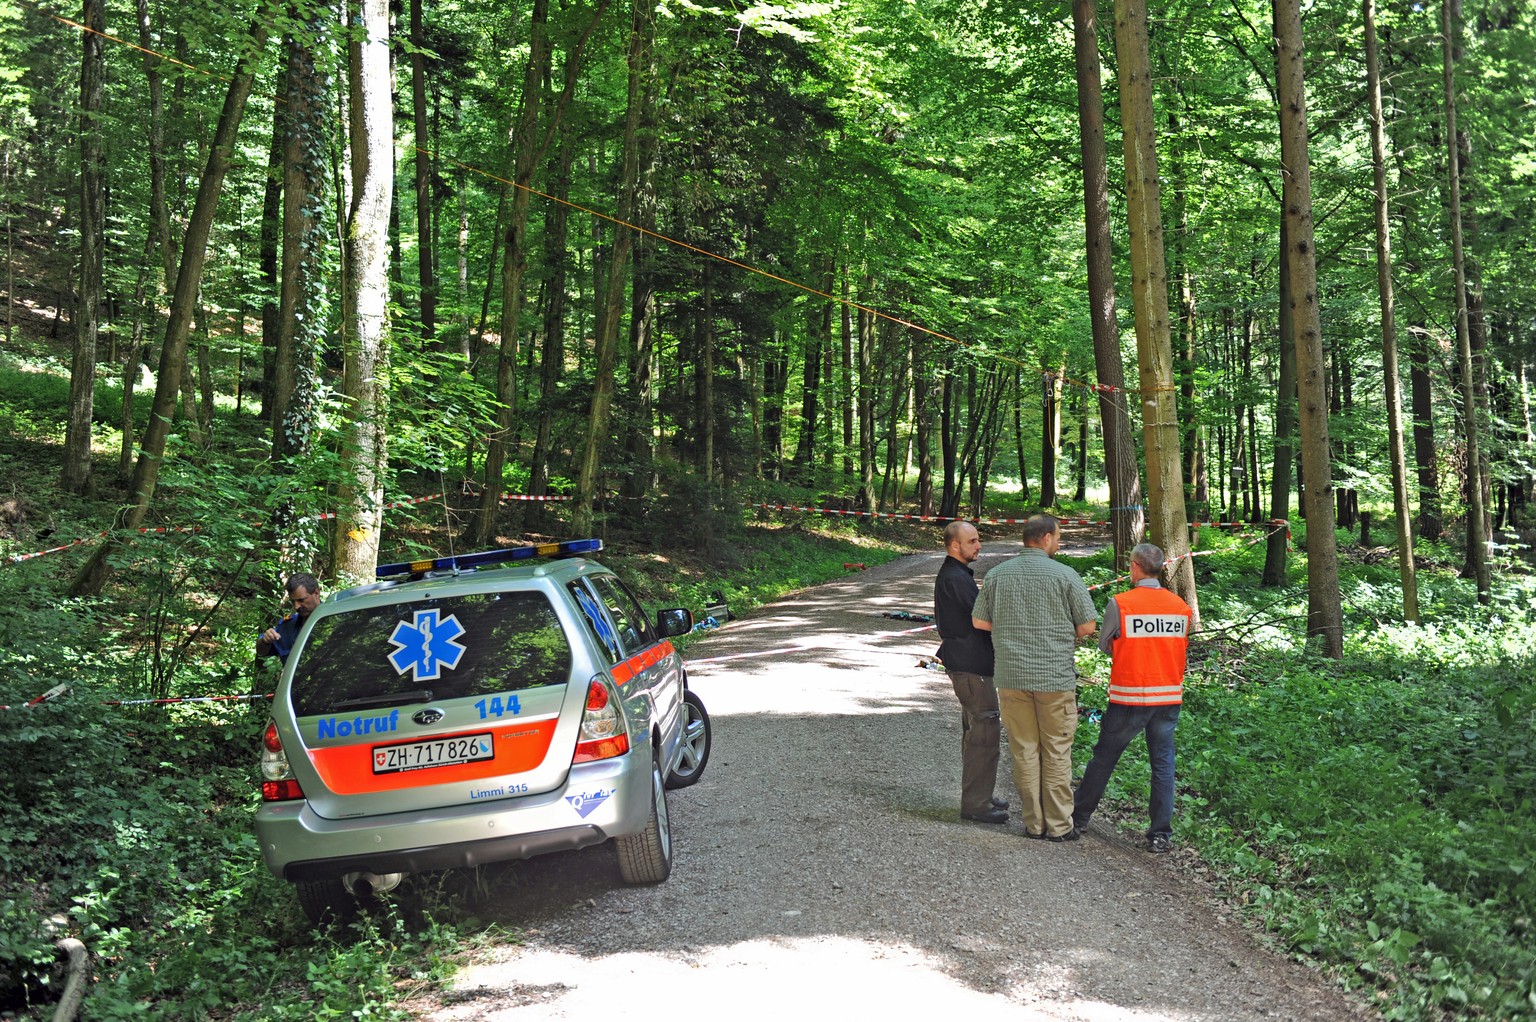 Der tragische Unfall ereignete sich in einem Wald bei Oetwil an der Limmat.